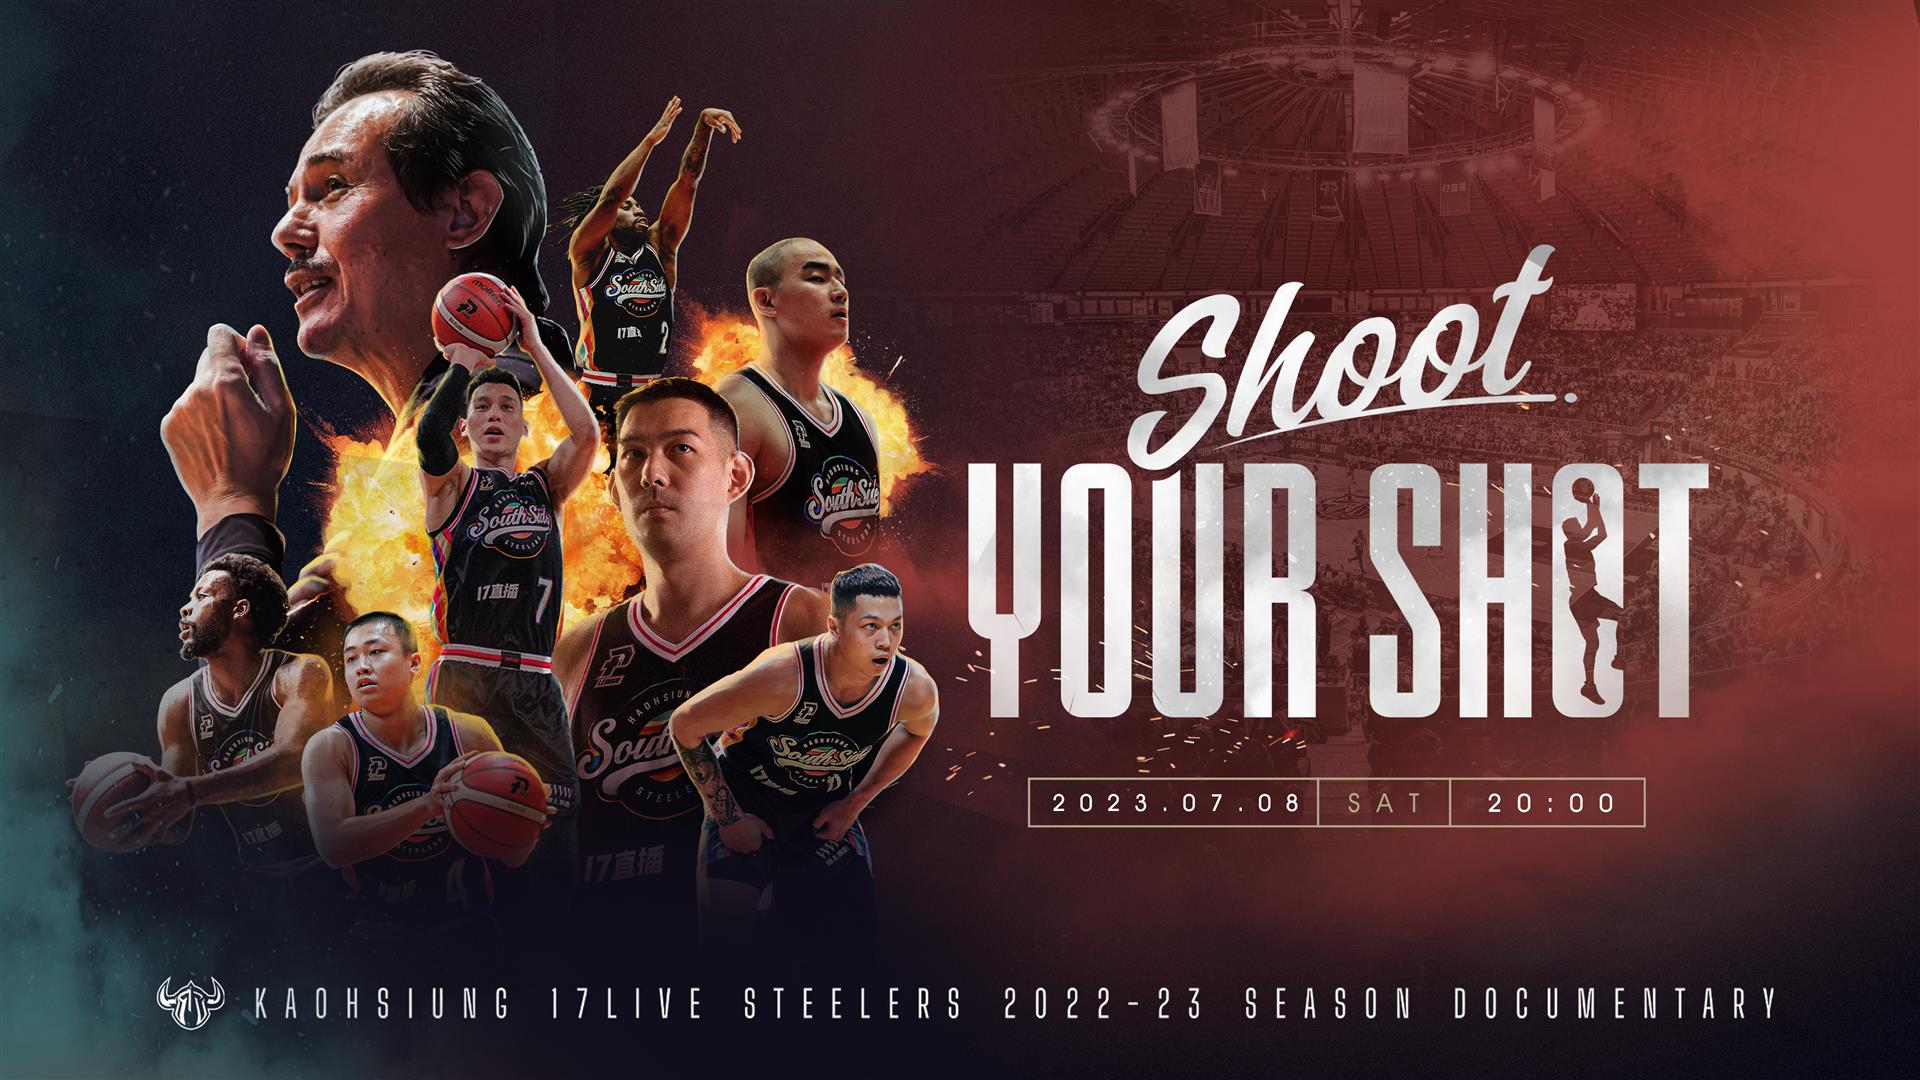  SHOOT YOUR SHOT-高雄17直播鋼鐵人 2022-23球季全紀錄